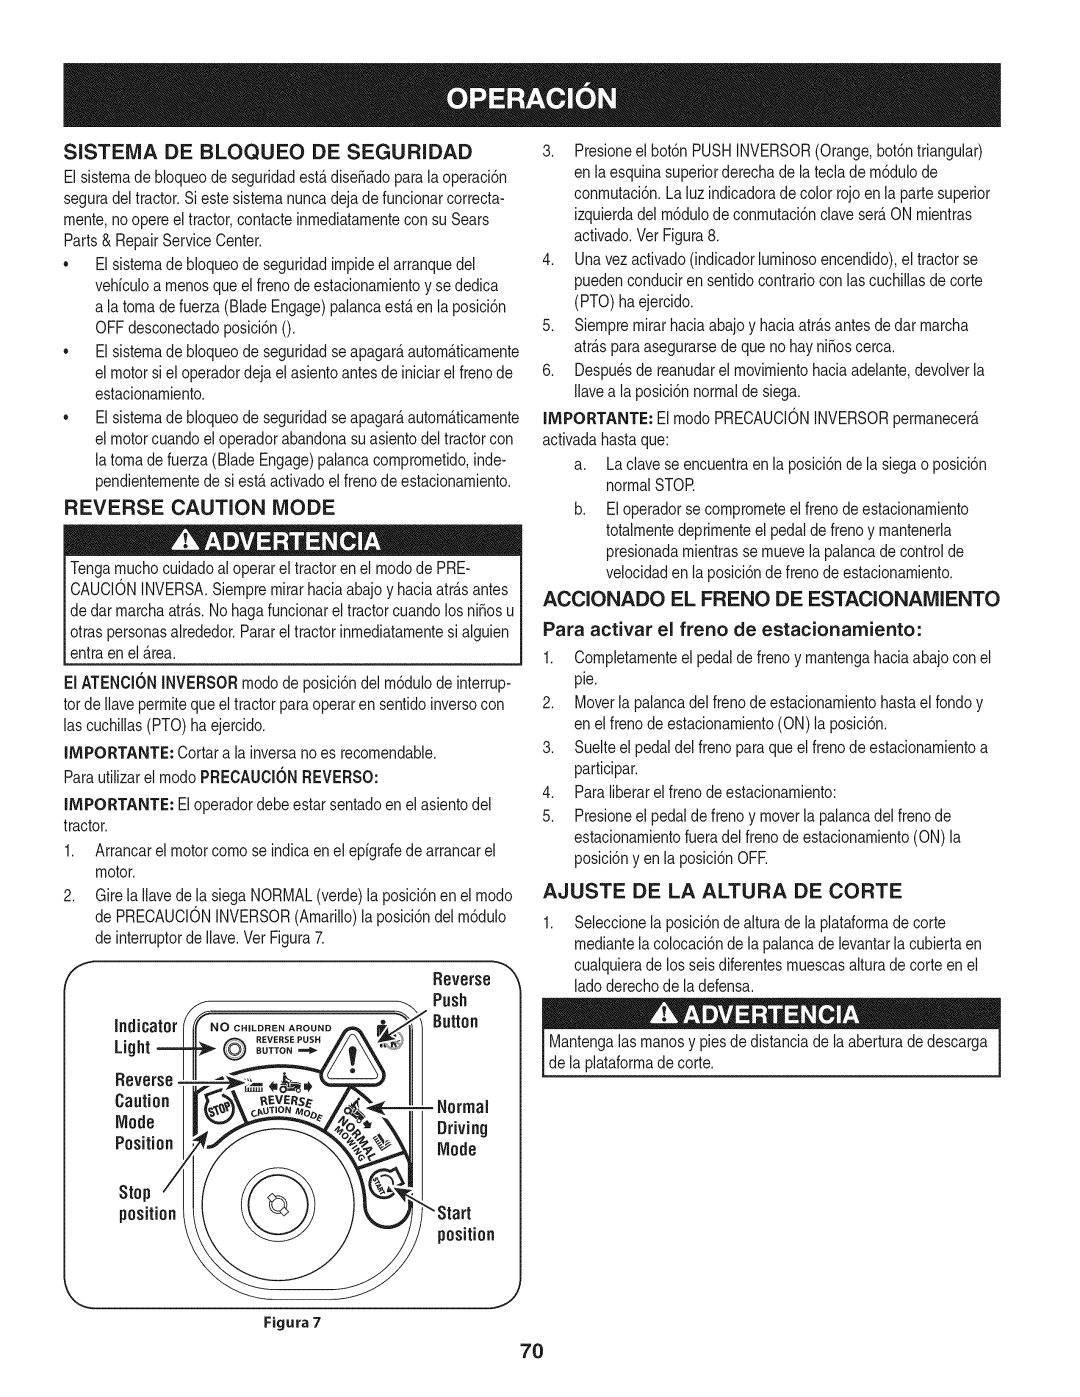 Craftsman 247.28901 manual Sistema De Bloqueo De Seguridad, Ajuste De La Altura De Corte, Indicator, Light, position 